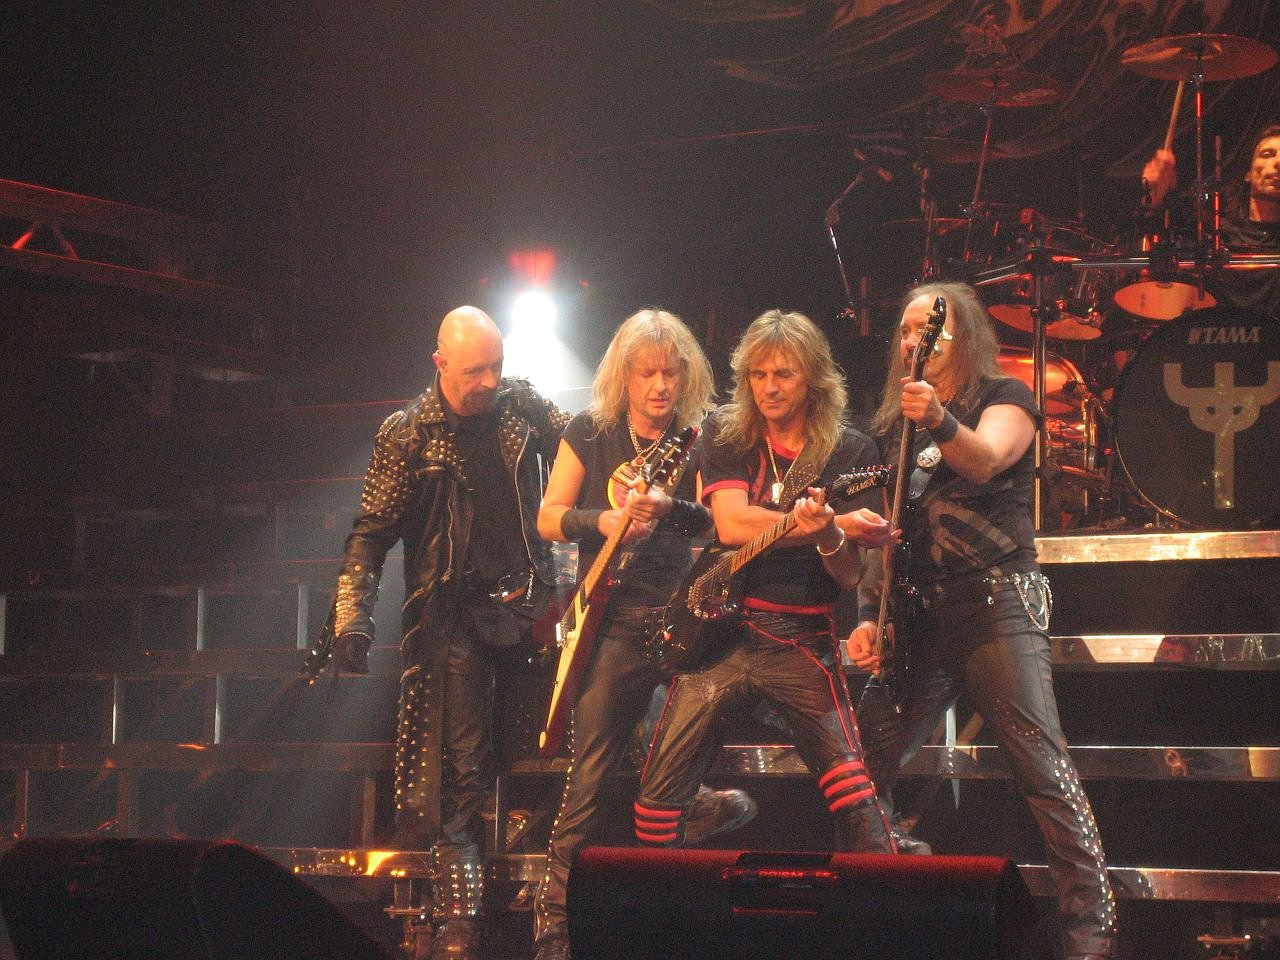 Judas_Priest_Retribution_2005_Tour.jpg